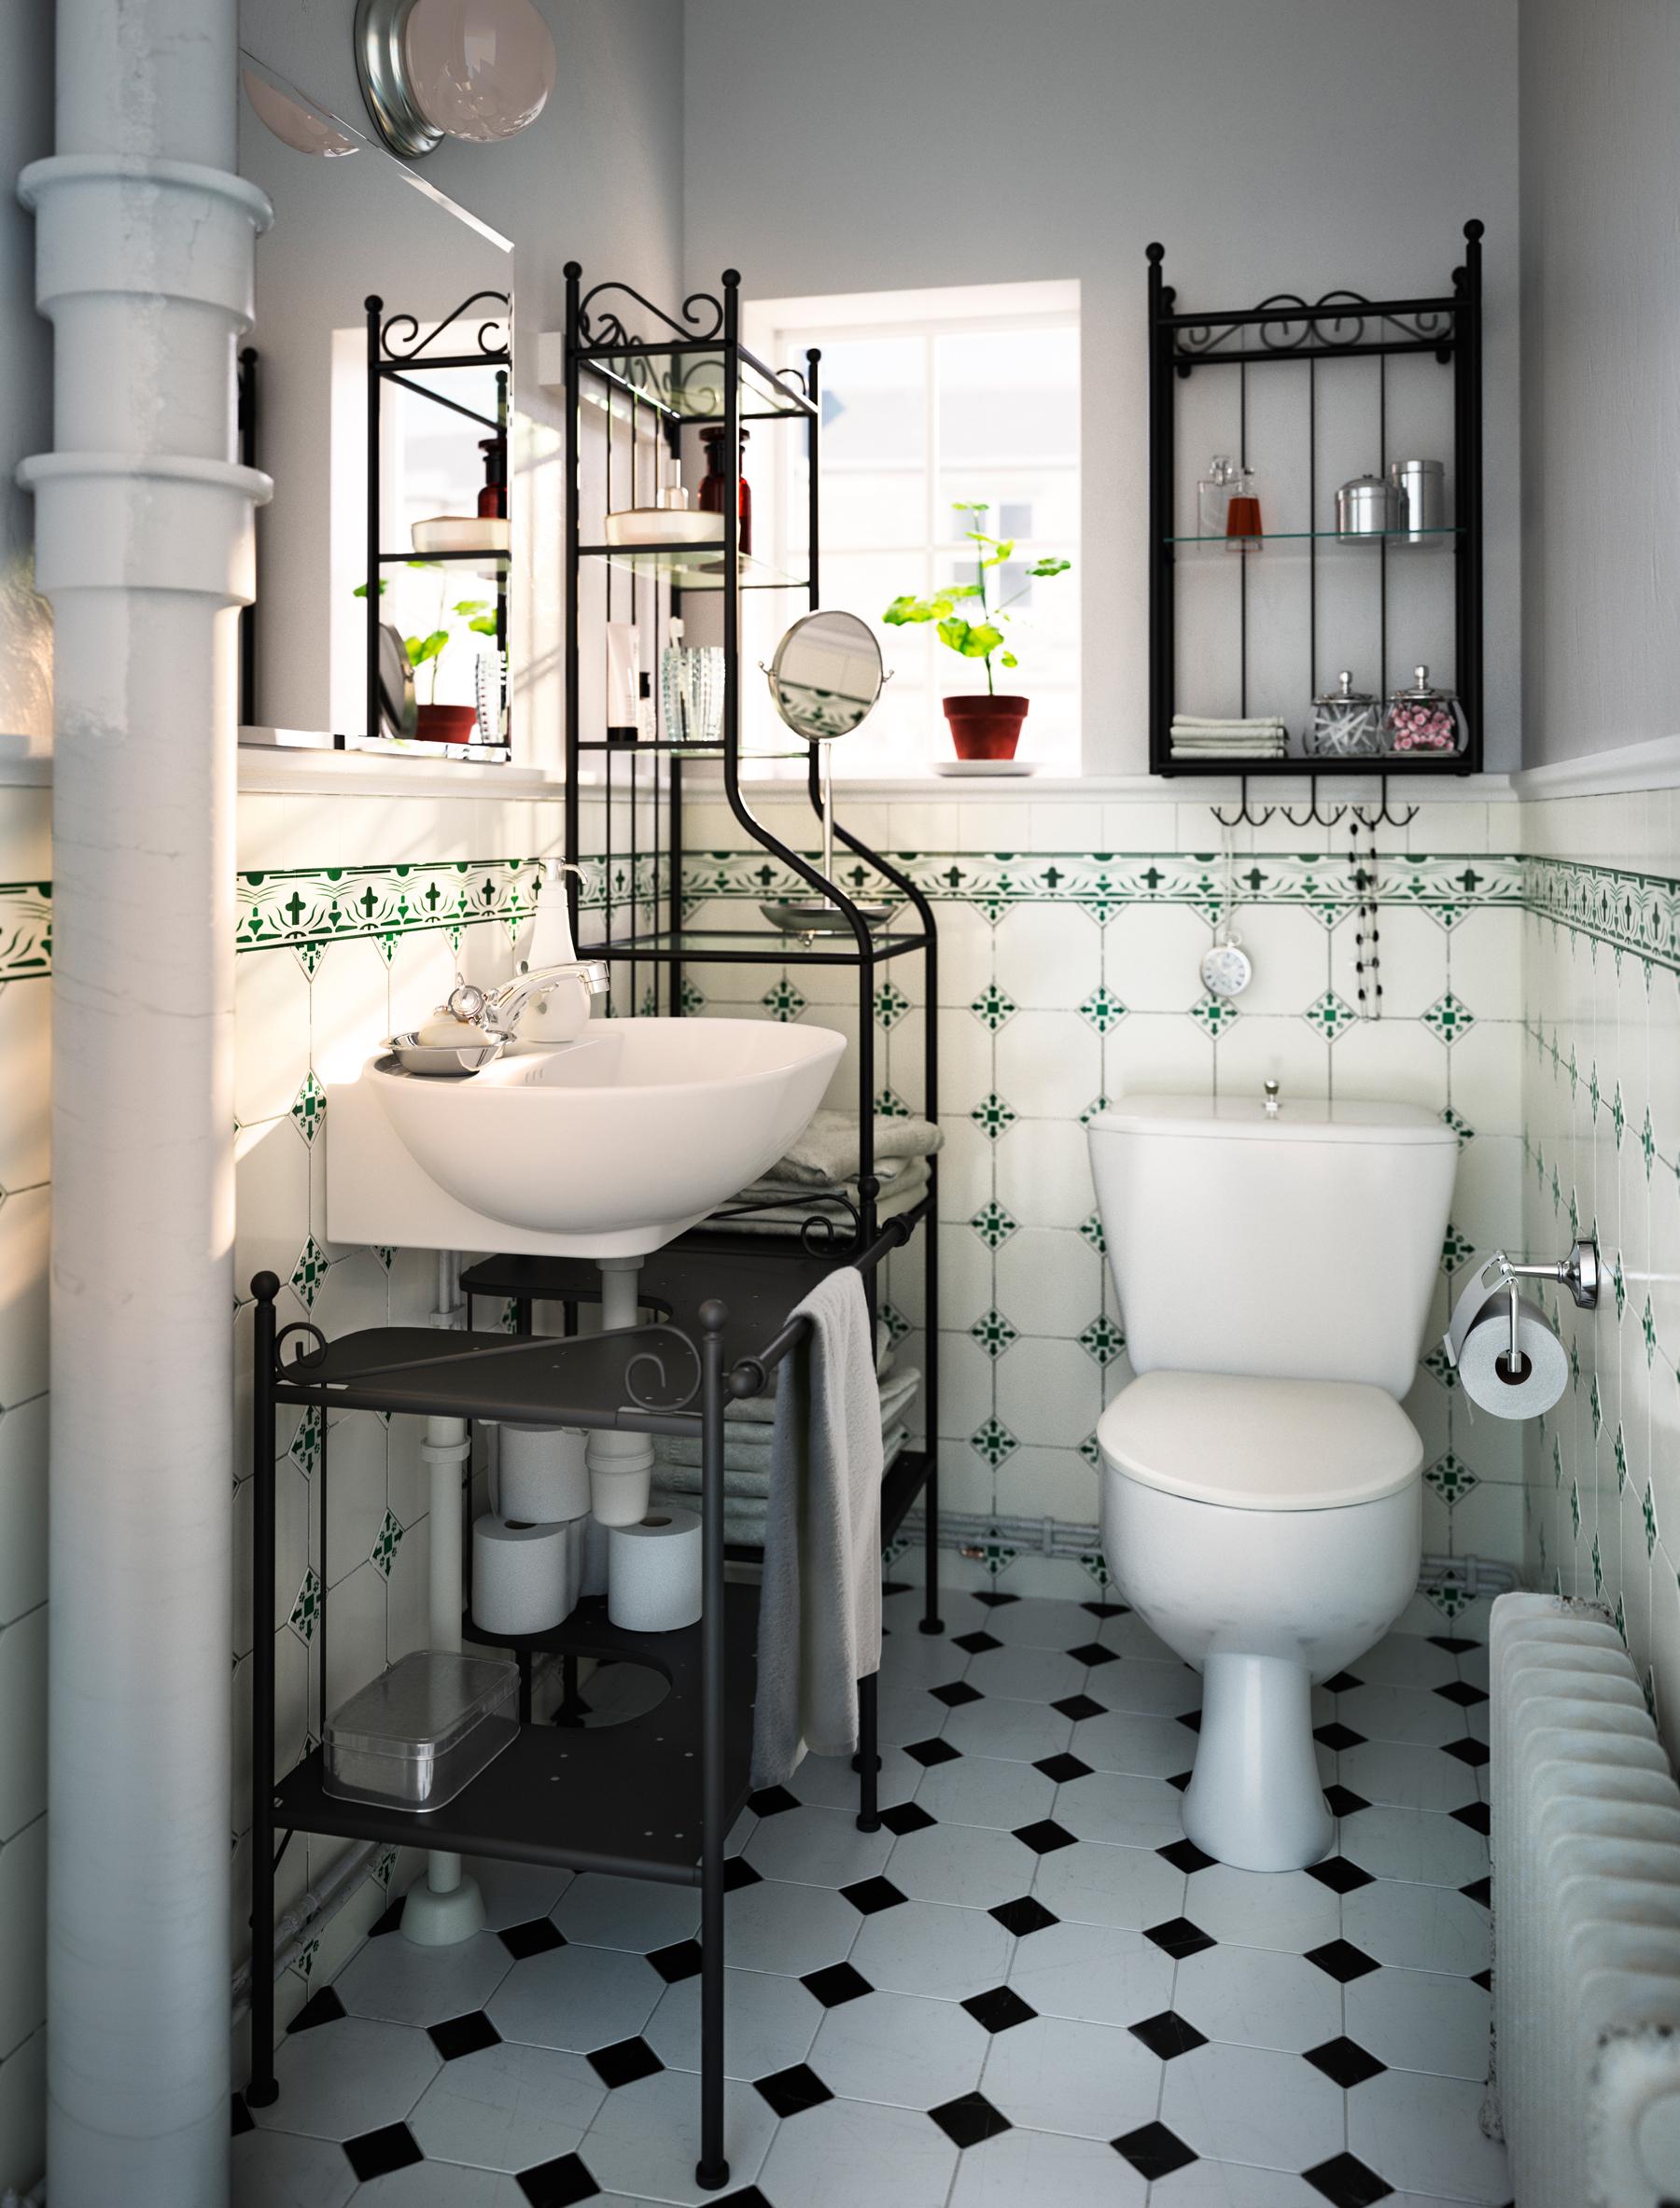 Regal aus geschwungenem Metall und gemusterte Fliesen im romantischen Badezimmer #toilette #badezimmerablage #schwarzweißefliesen #metallregal ©Inter IKEA Systems B.V